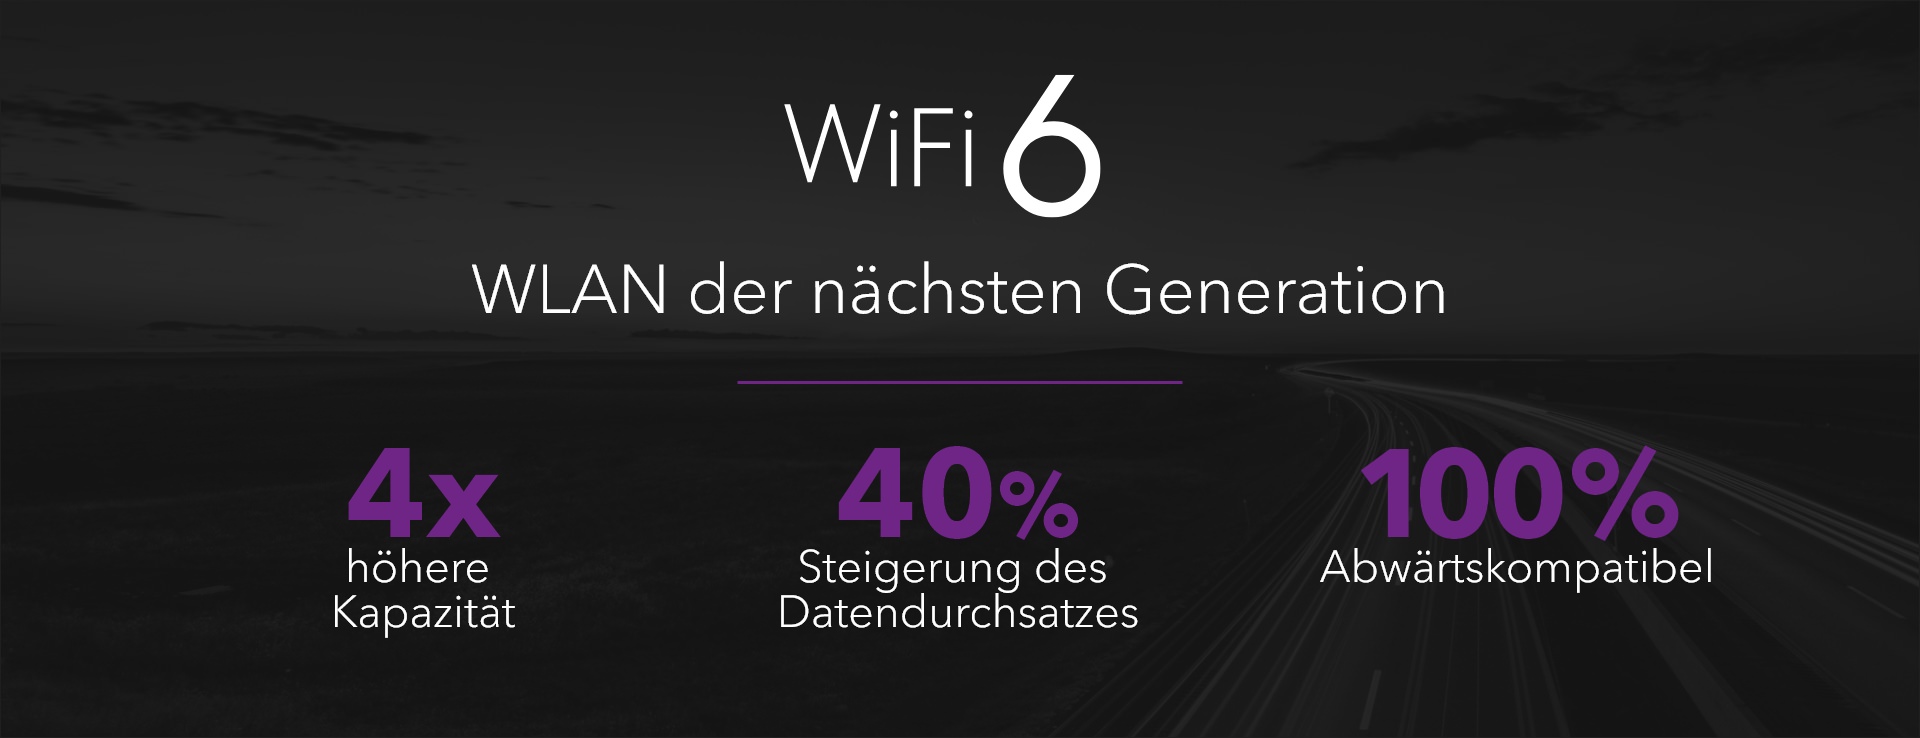 WiFi6–SMB–1-de.jpg